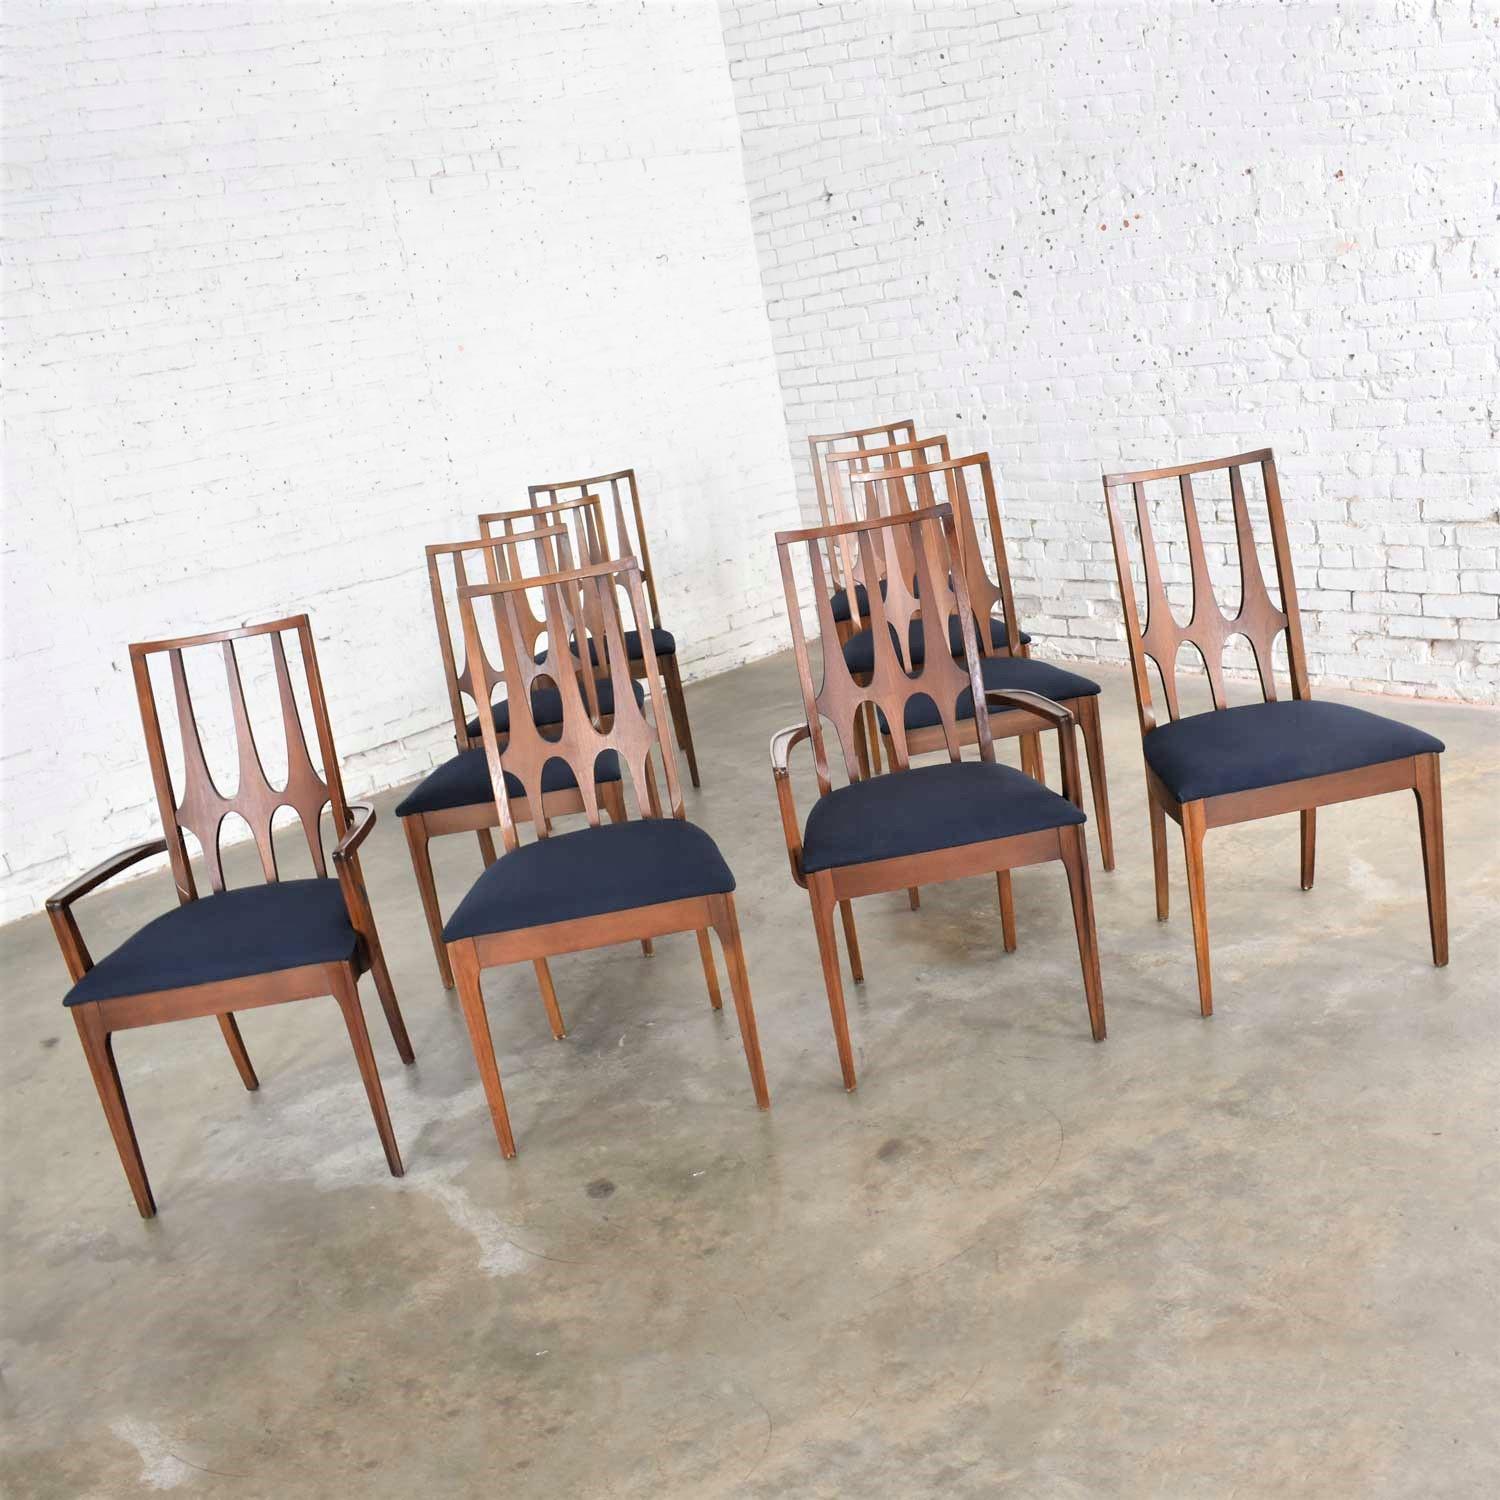 Ensemble original Broyhill Brasilia de style moderne du milieu du siècle, composé de 10 chaises de salle à manger, 2 bras et 8 côtés. Noyer foncé et nouvelle sellerie bleu foncé/noir. Dans un état vintage fabuleux, à l'exception d'une chaise